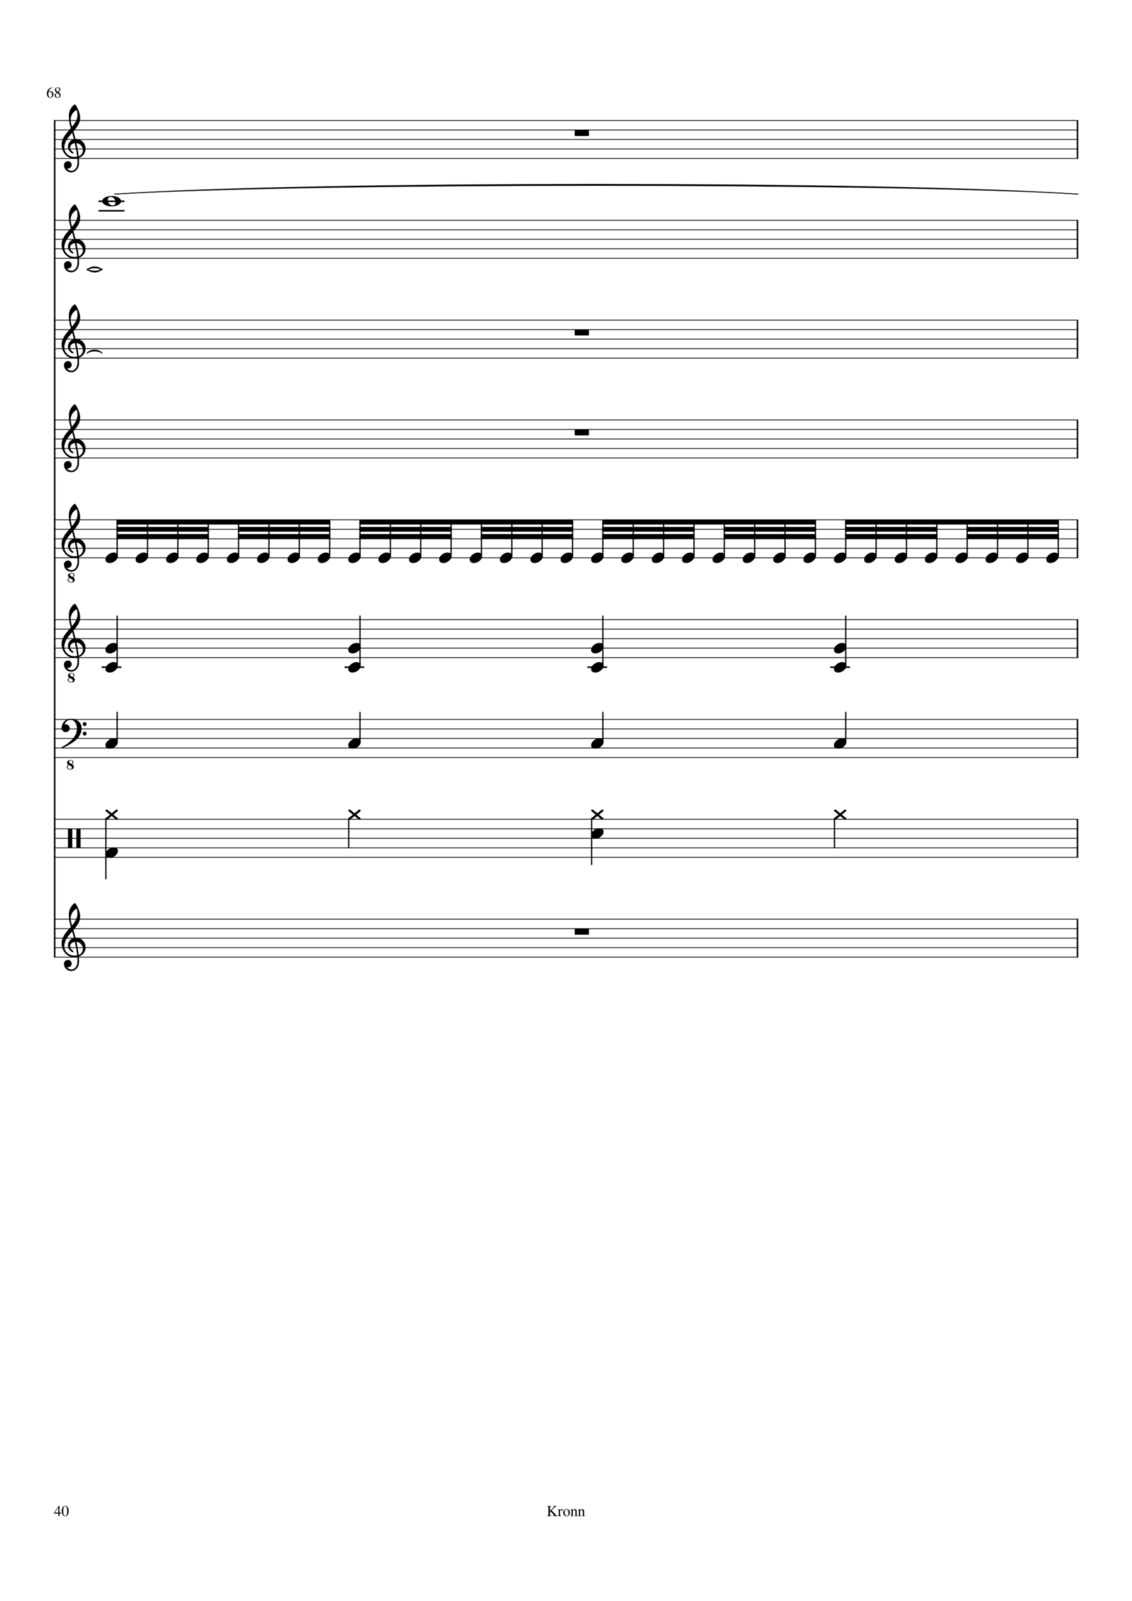 Vechnaya prizrachnaya vstrechnaya slide, Image 21